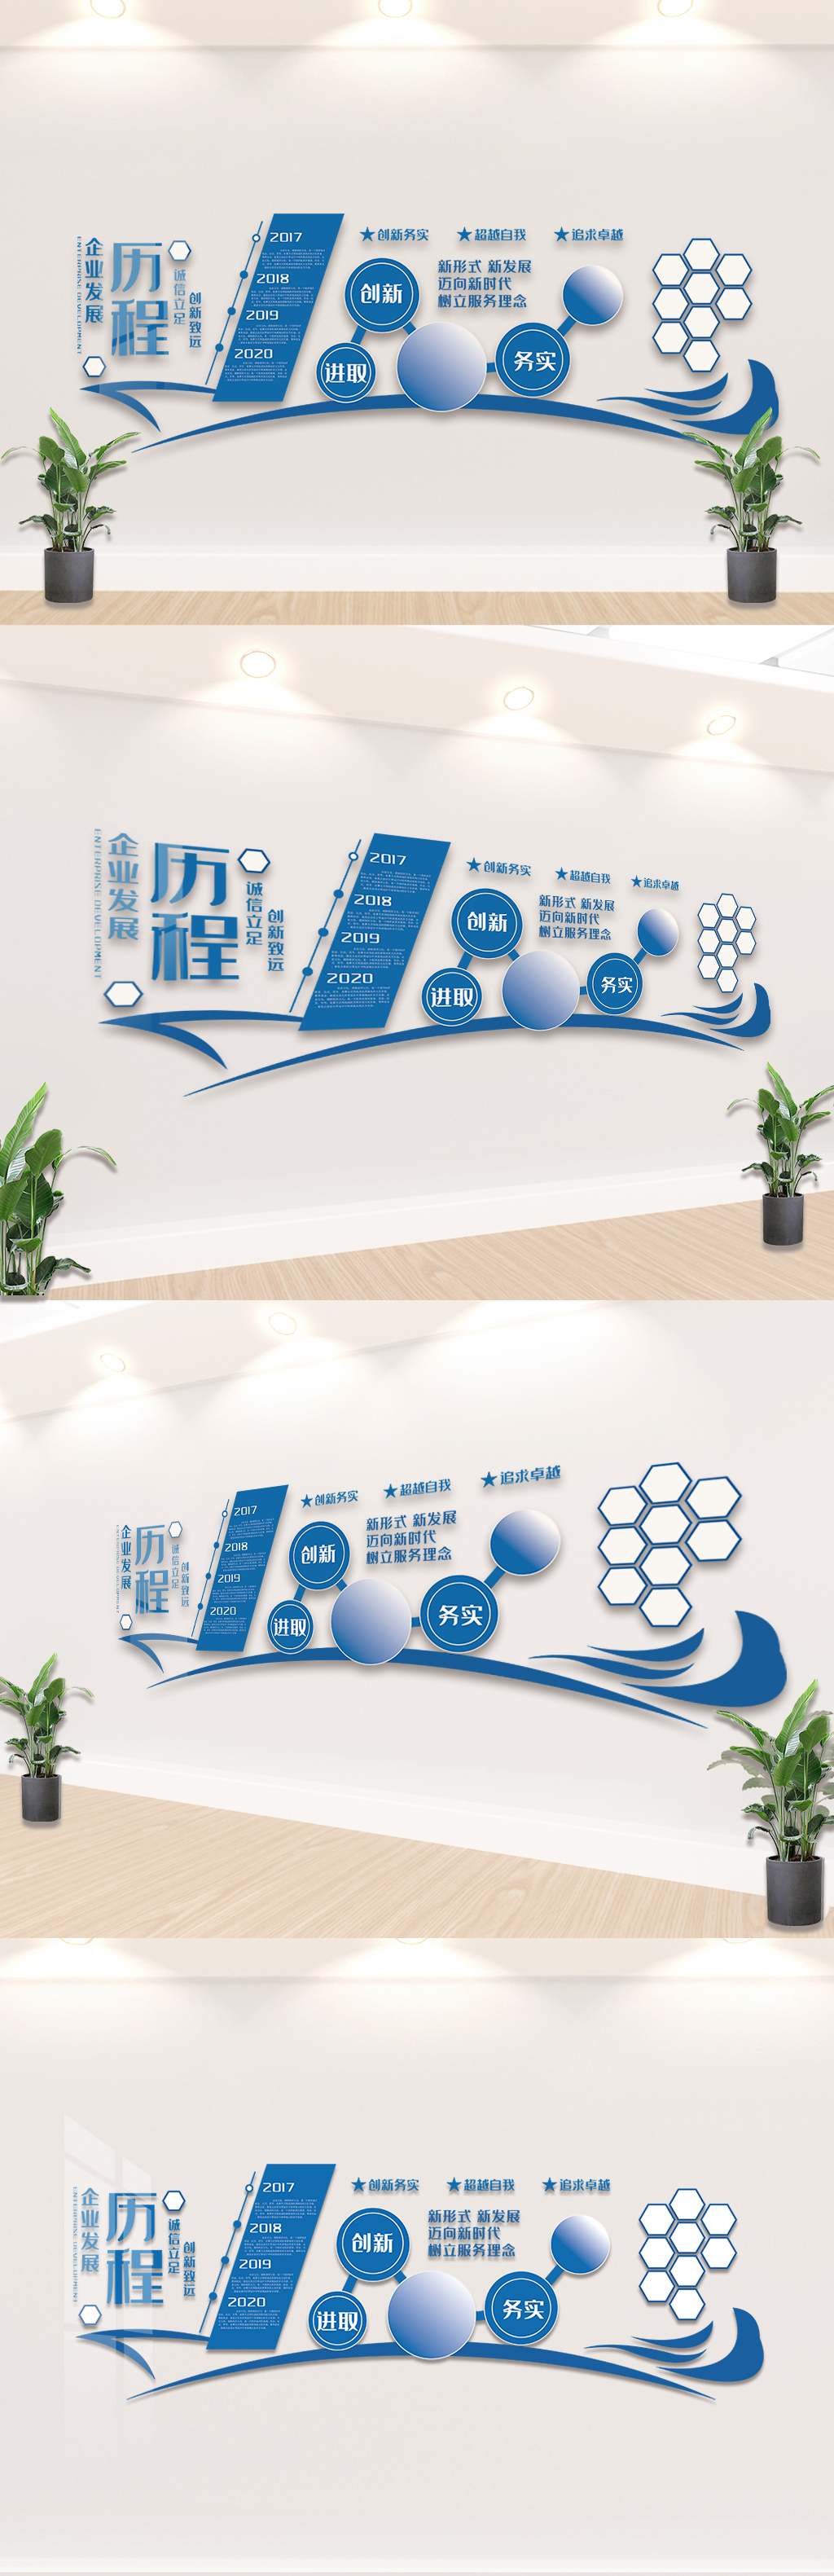 大气创意企业宣传文化墙设计模板素材图片